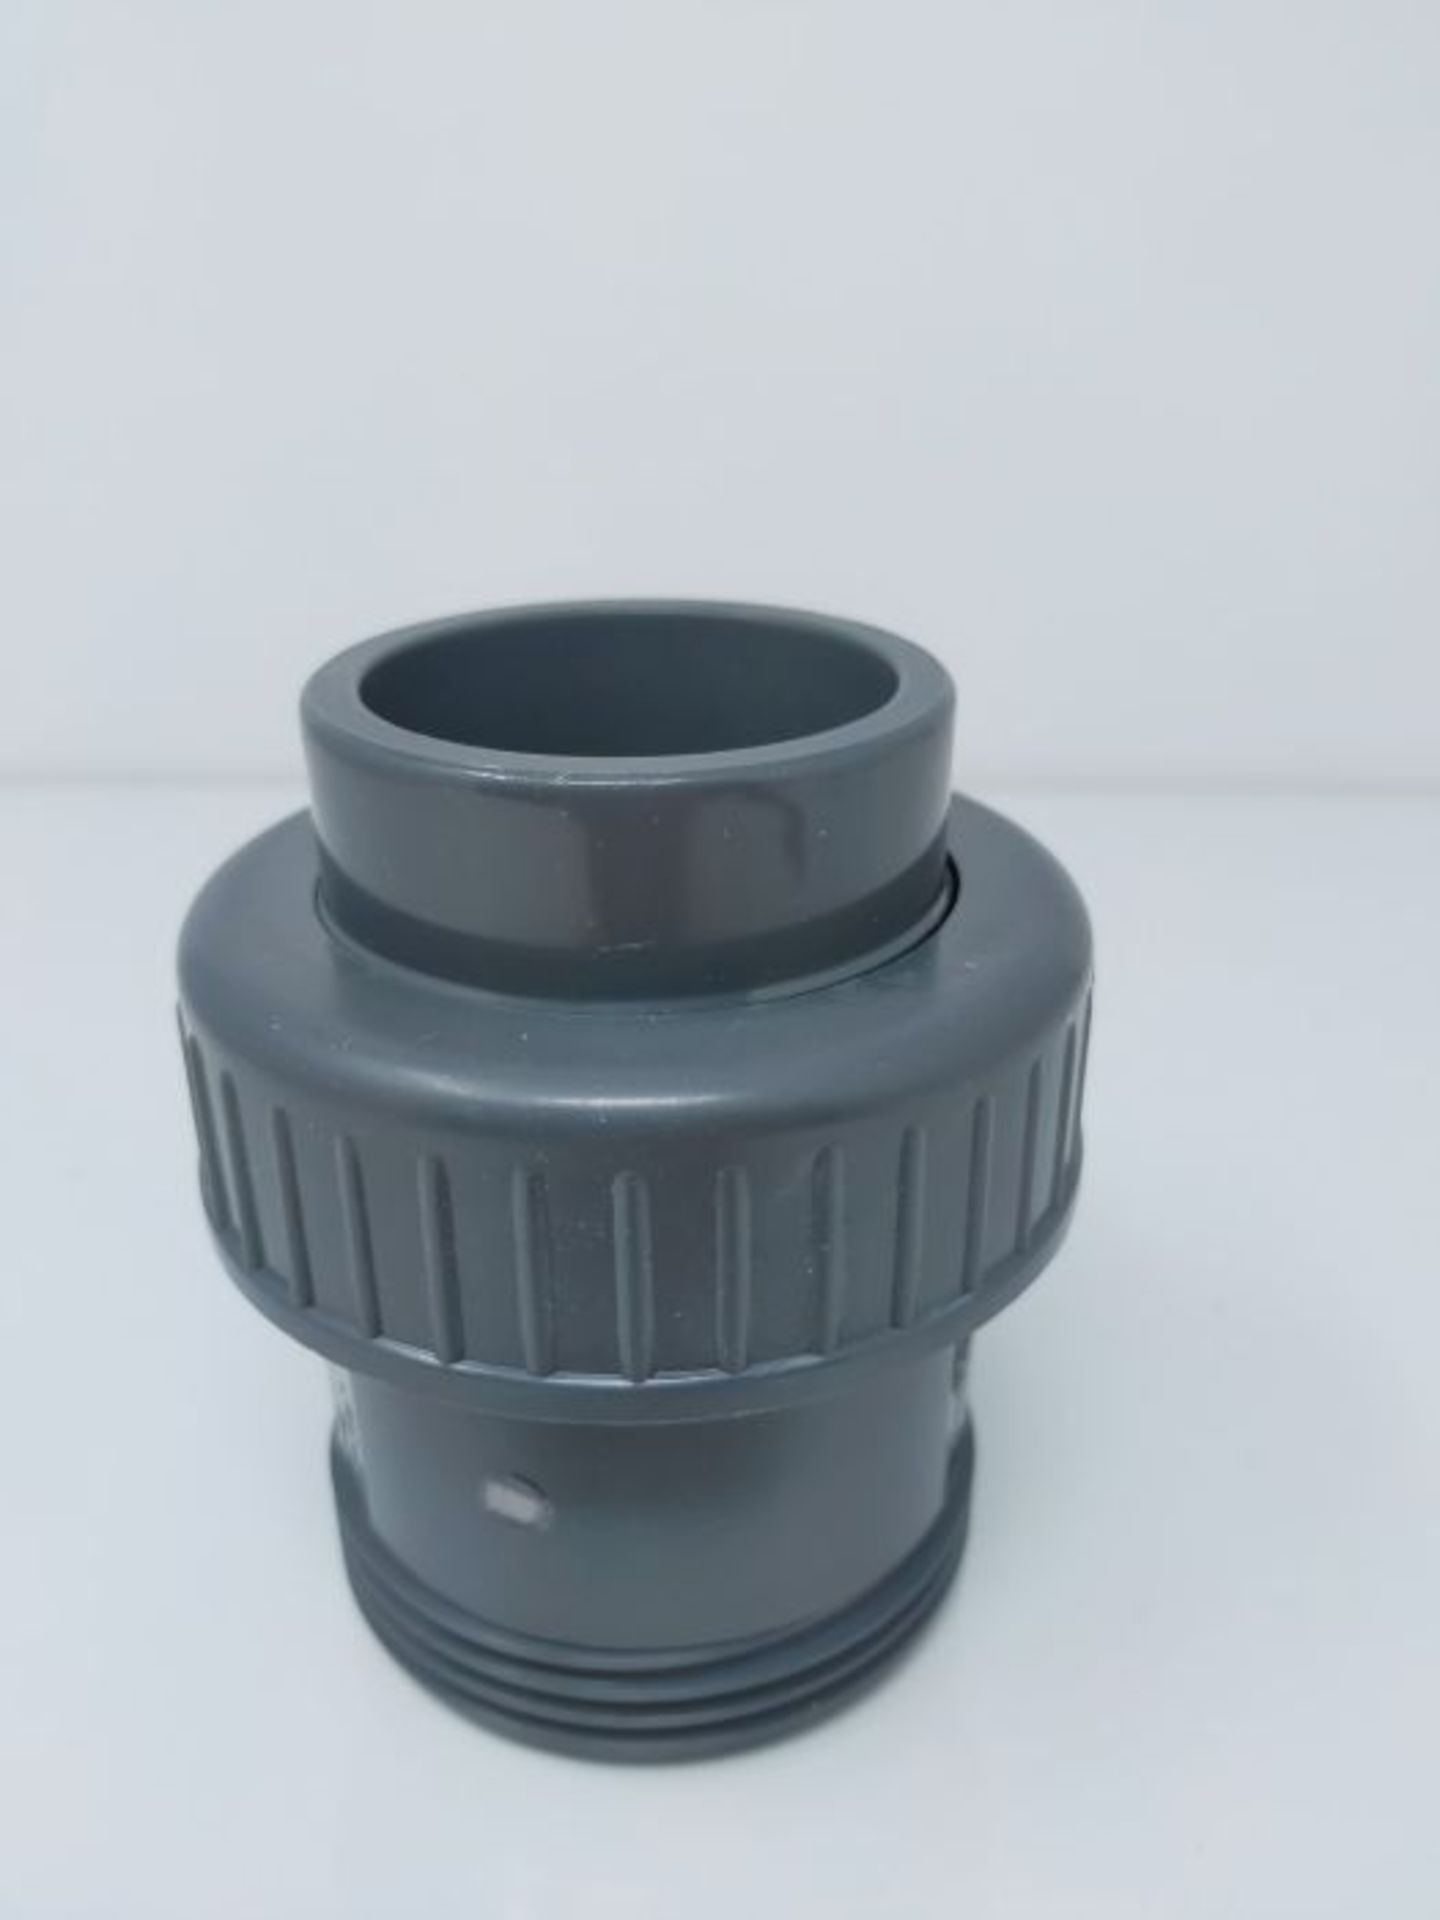 altone PD-01510 Clapet anti-retour en PVC Gris 50 mm - Image 2 of 2